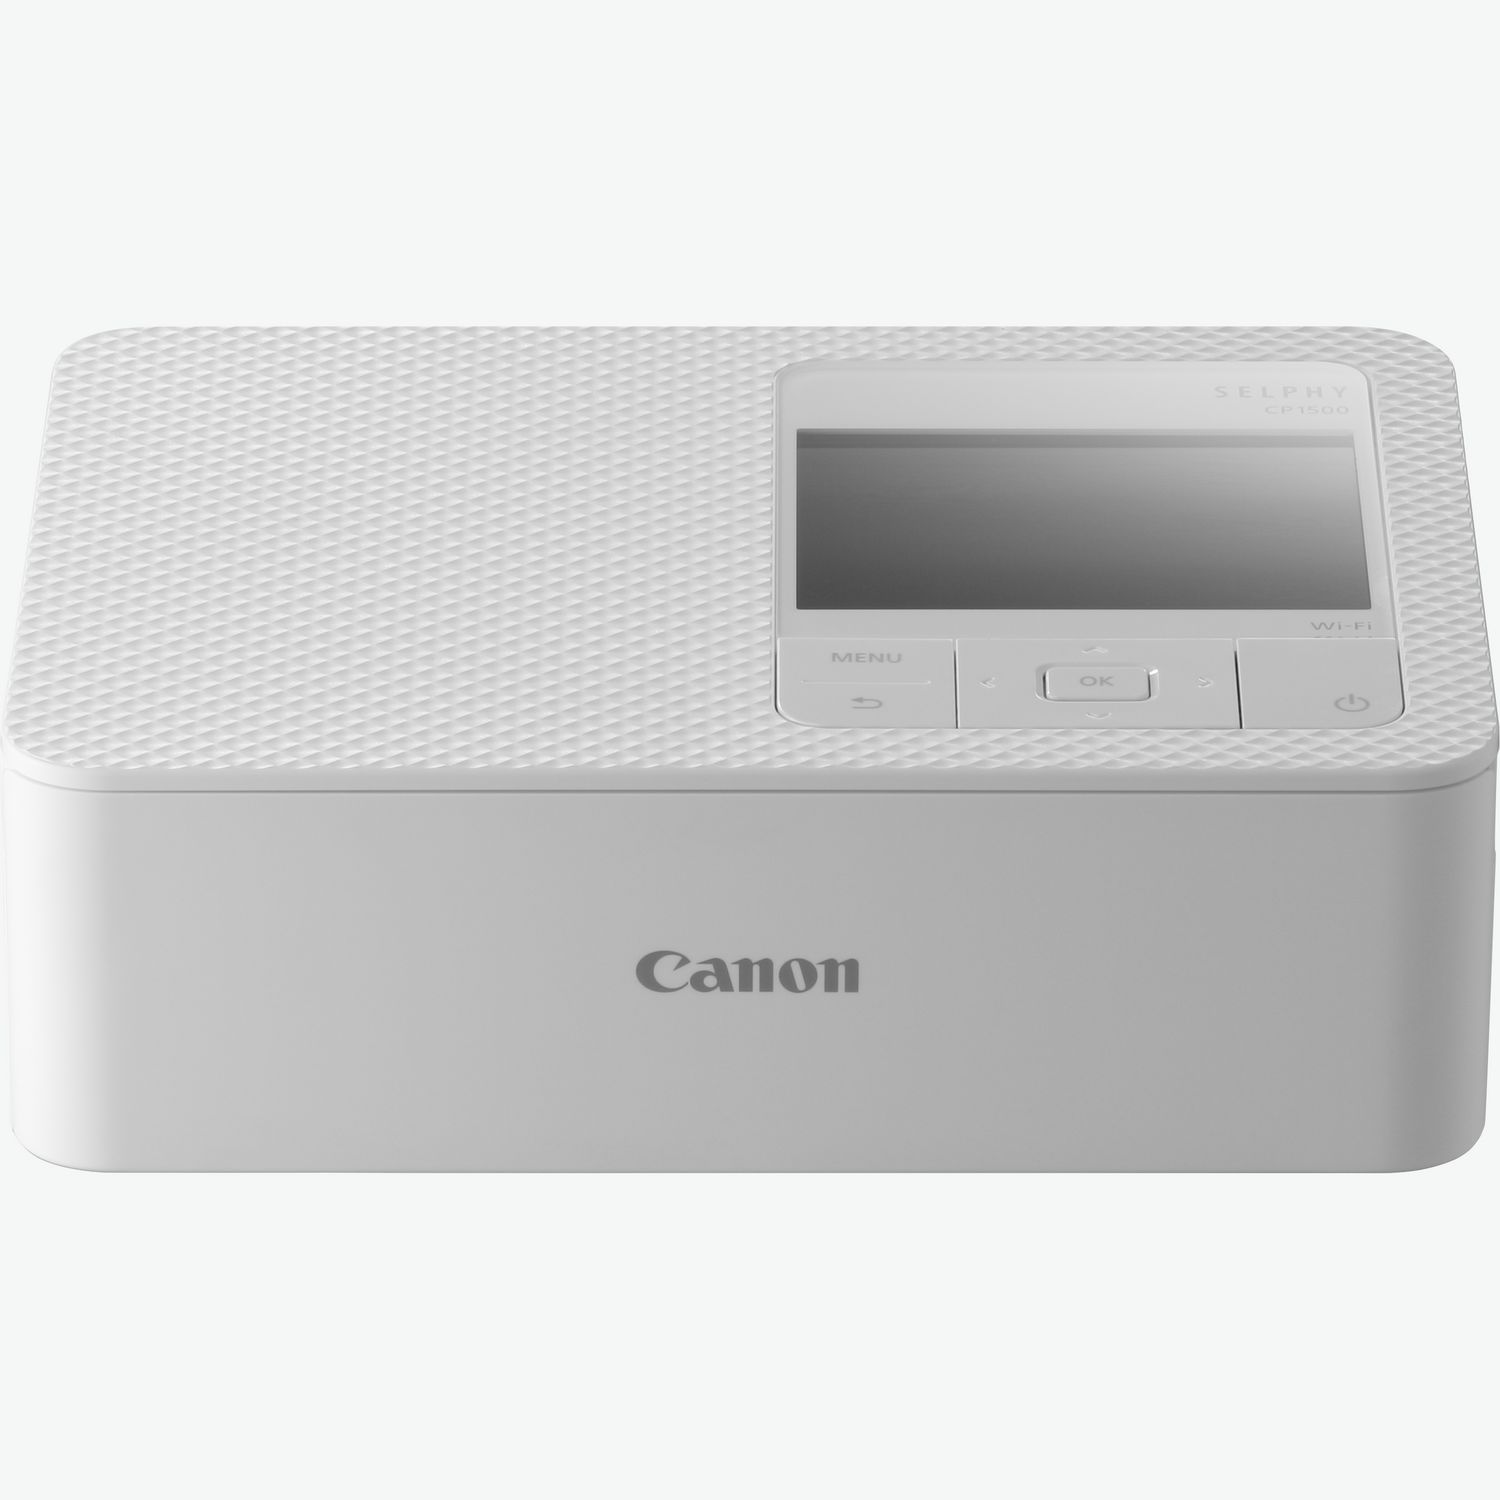 Canon Selphy CP1000 Portable Printer Review 